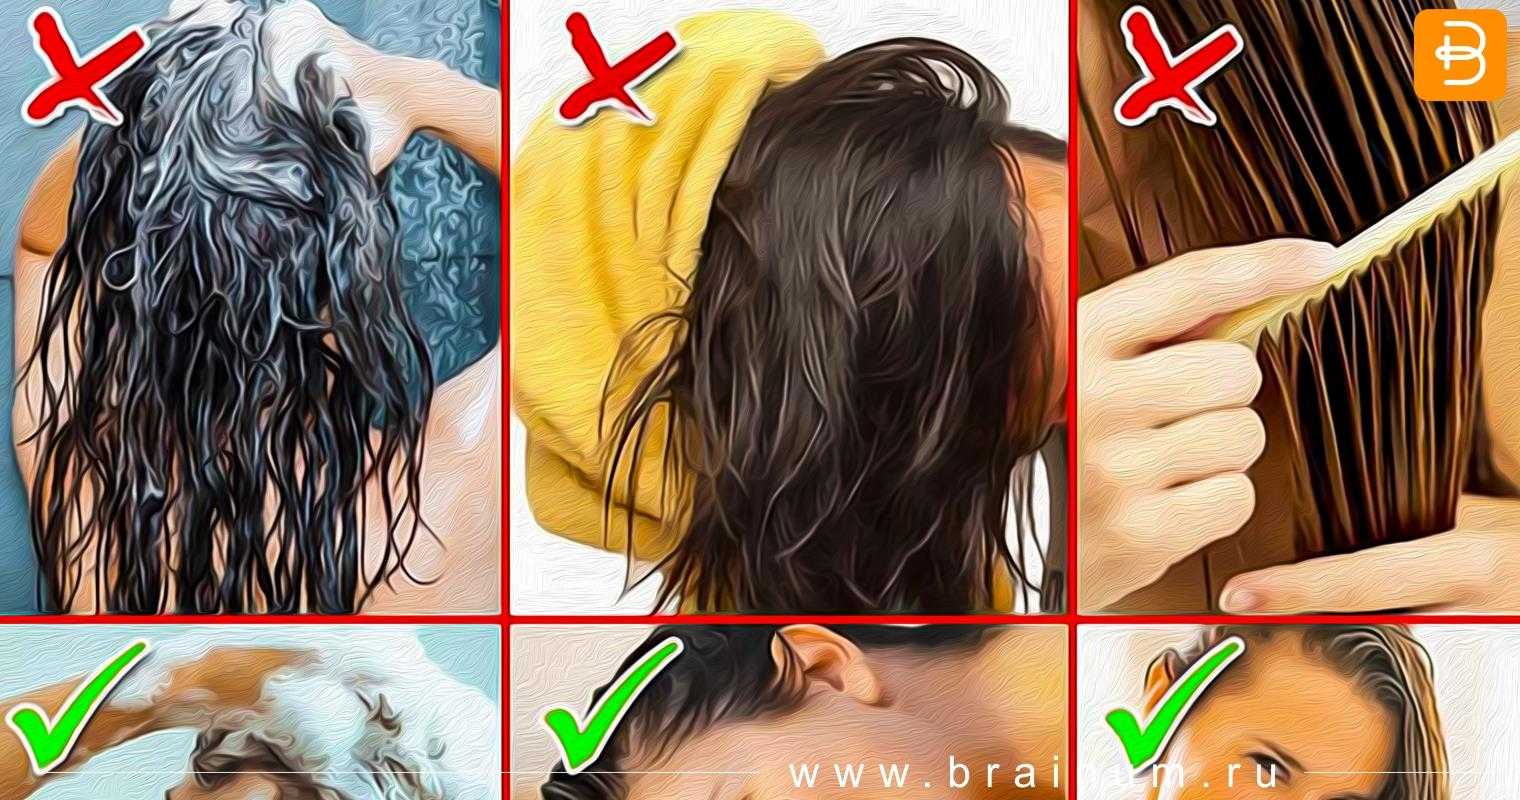 Как правильно мыть волосы на голове